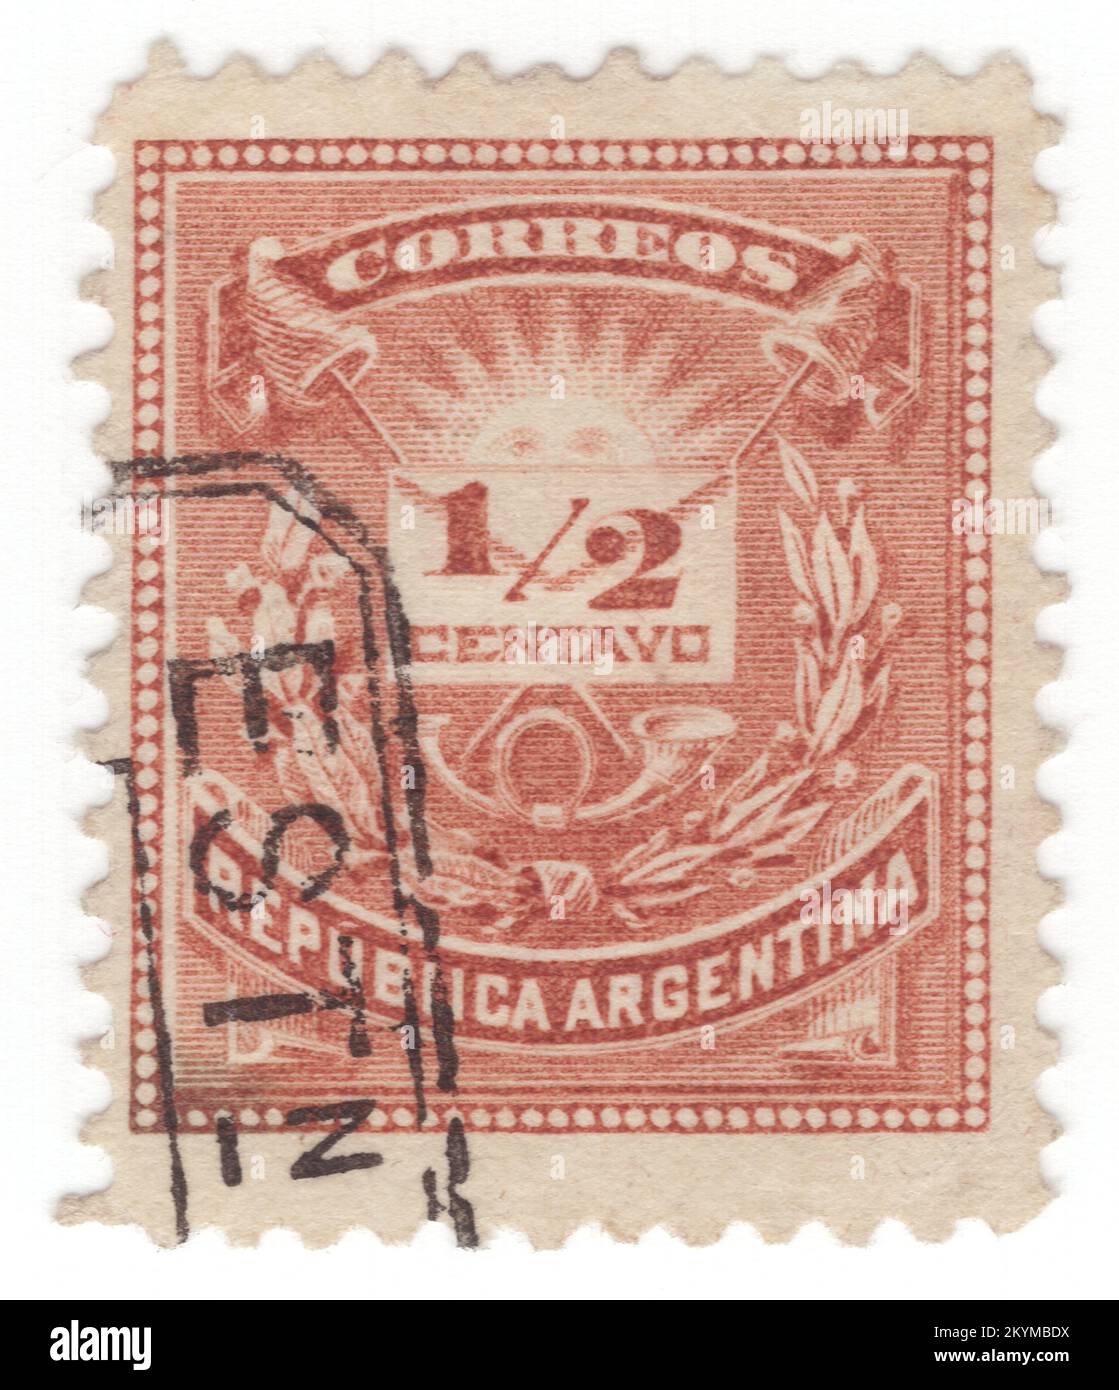 ARGENTINA - 1884: Francobollo verde ½ centavos raffigurante una composizione allegoria con il volto dell'Alba, le calotte giacobine, la busta postale, le corna postali e i rami dell'alloro. L'Argentina, ufficialmente la Repubblica argentina, è un paese della metà meridionale del Sud America. Condivide la maggior parte del cono Meridionale con il Cile ad ovest, ed è anche confinato con la Bolivia e il Paraguay a nord, il Brasile a nord-est, l'Uruguay e l'Oceano Atlantico meridionale ad est, e il Drake passaggio a sud. L'Argentina è uno stato federale Foto Stock